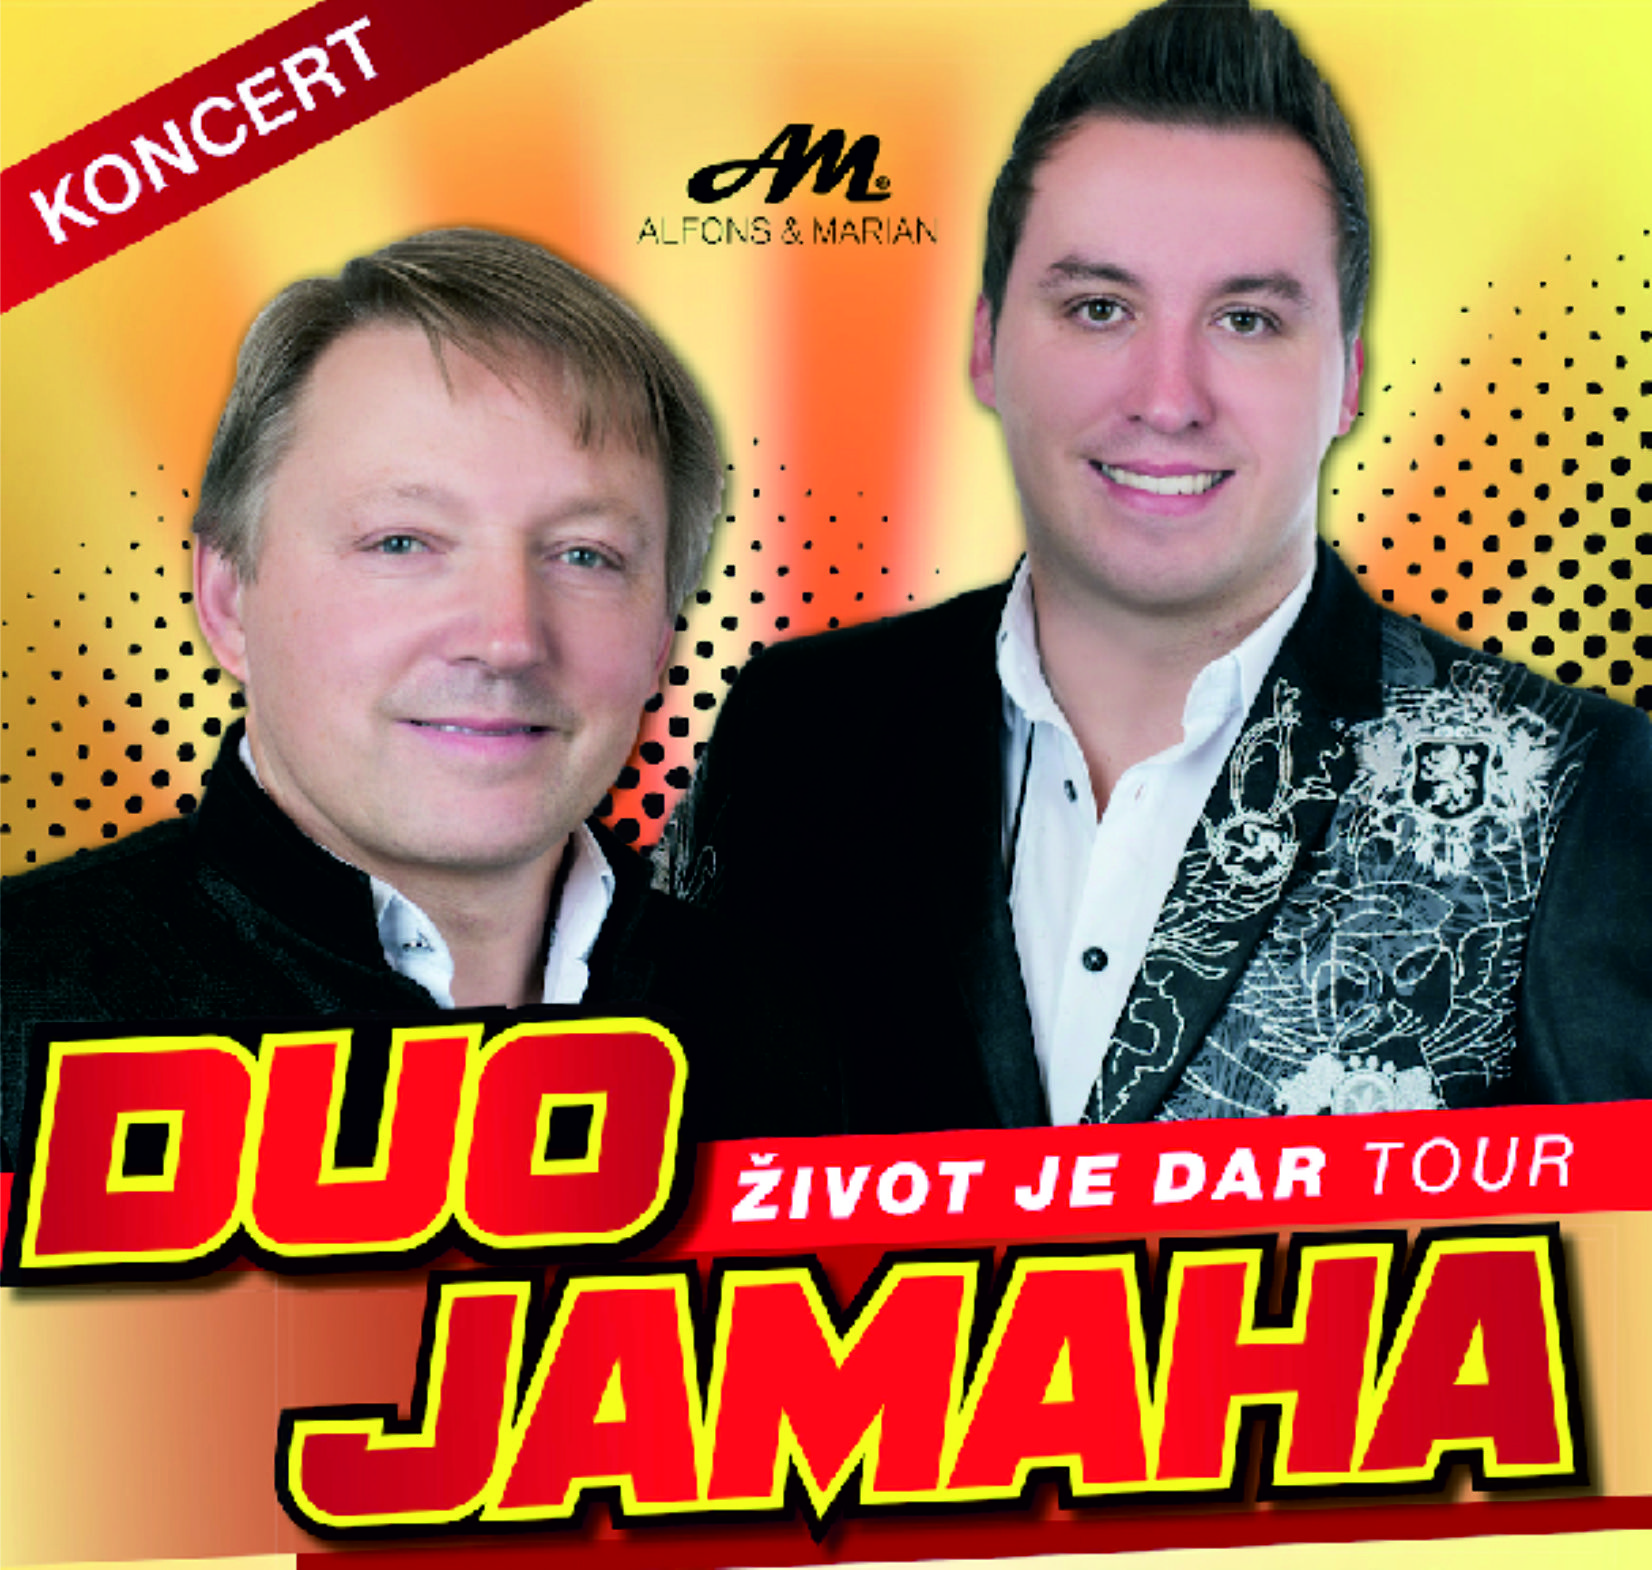 DUO JAMAHA - ŽIVOT JE DAR tour